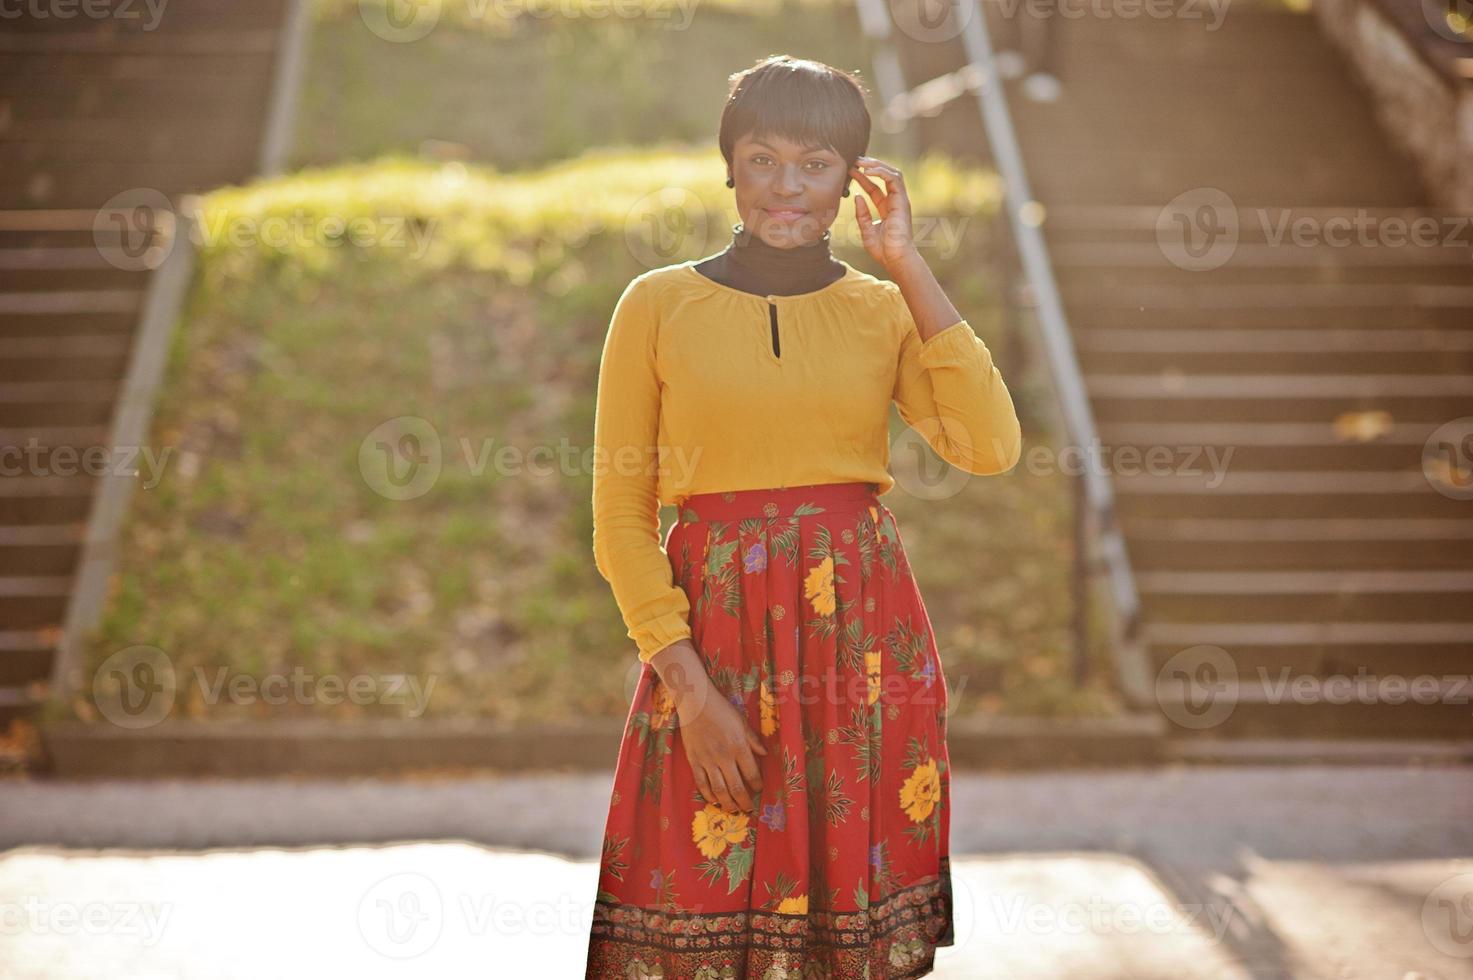 afroamerikanisches Mädchen im gelben und roten Kleid im goldenen Herbstpark. foto